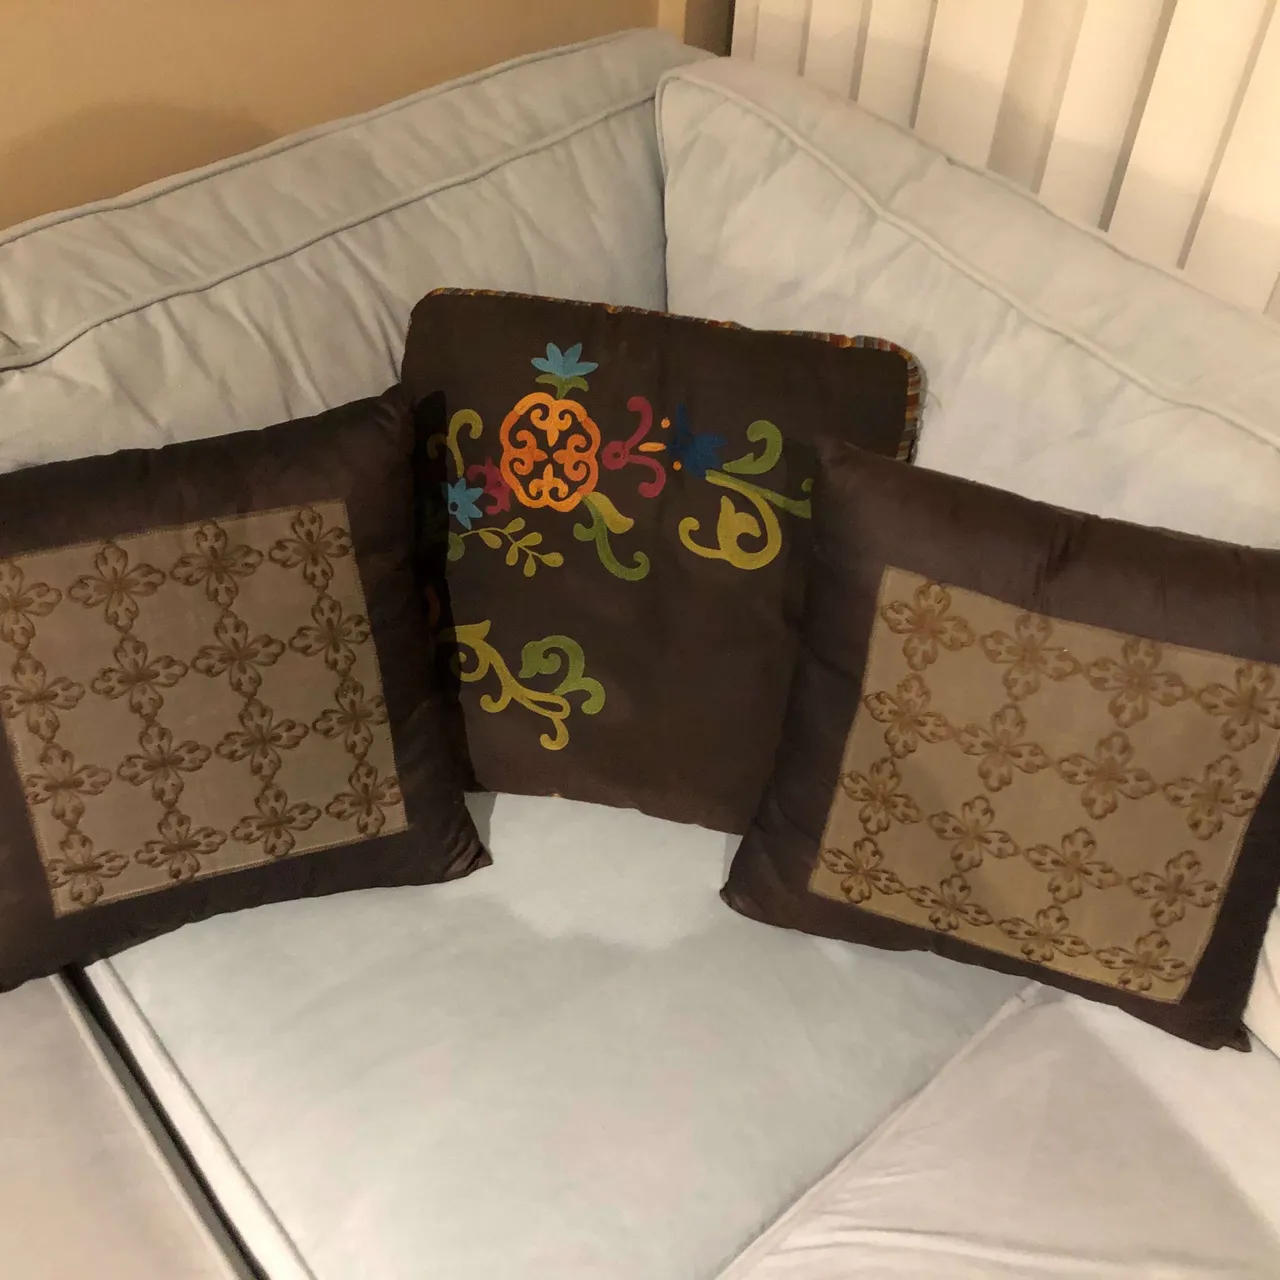 3 throw cushions photo 1